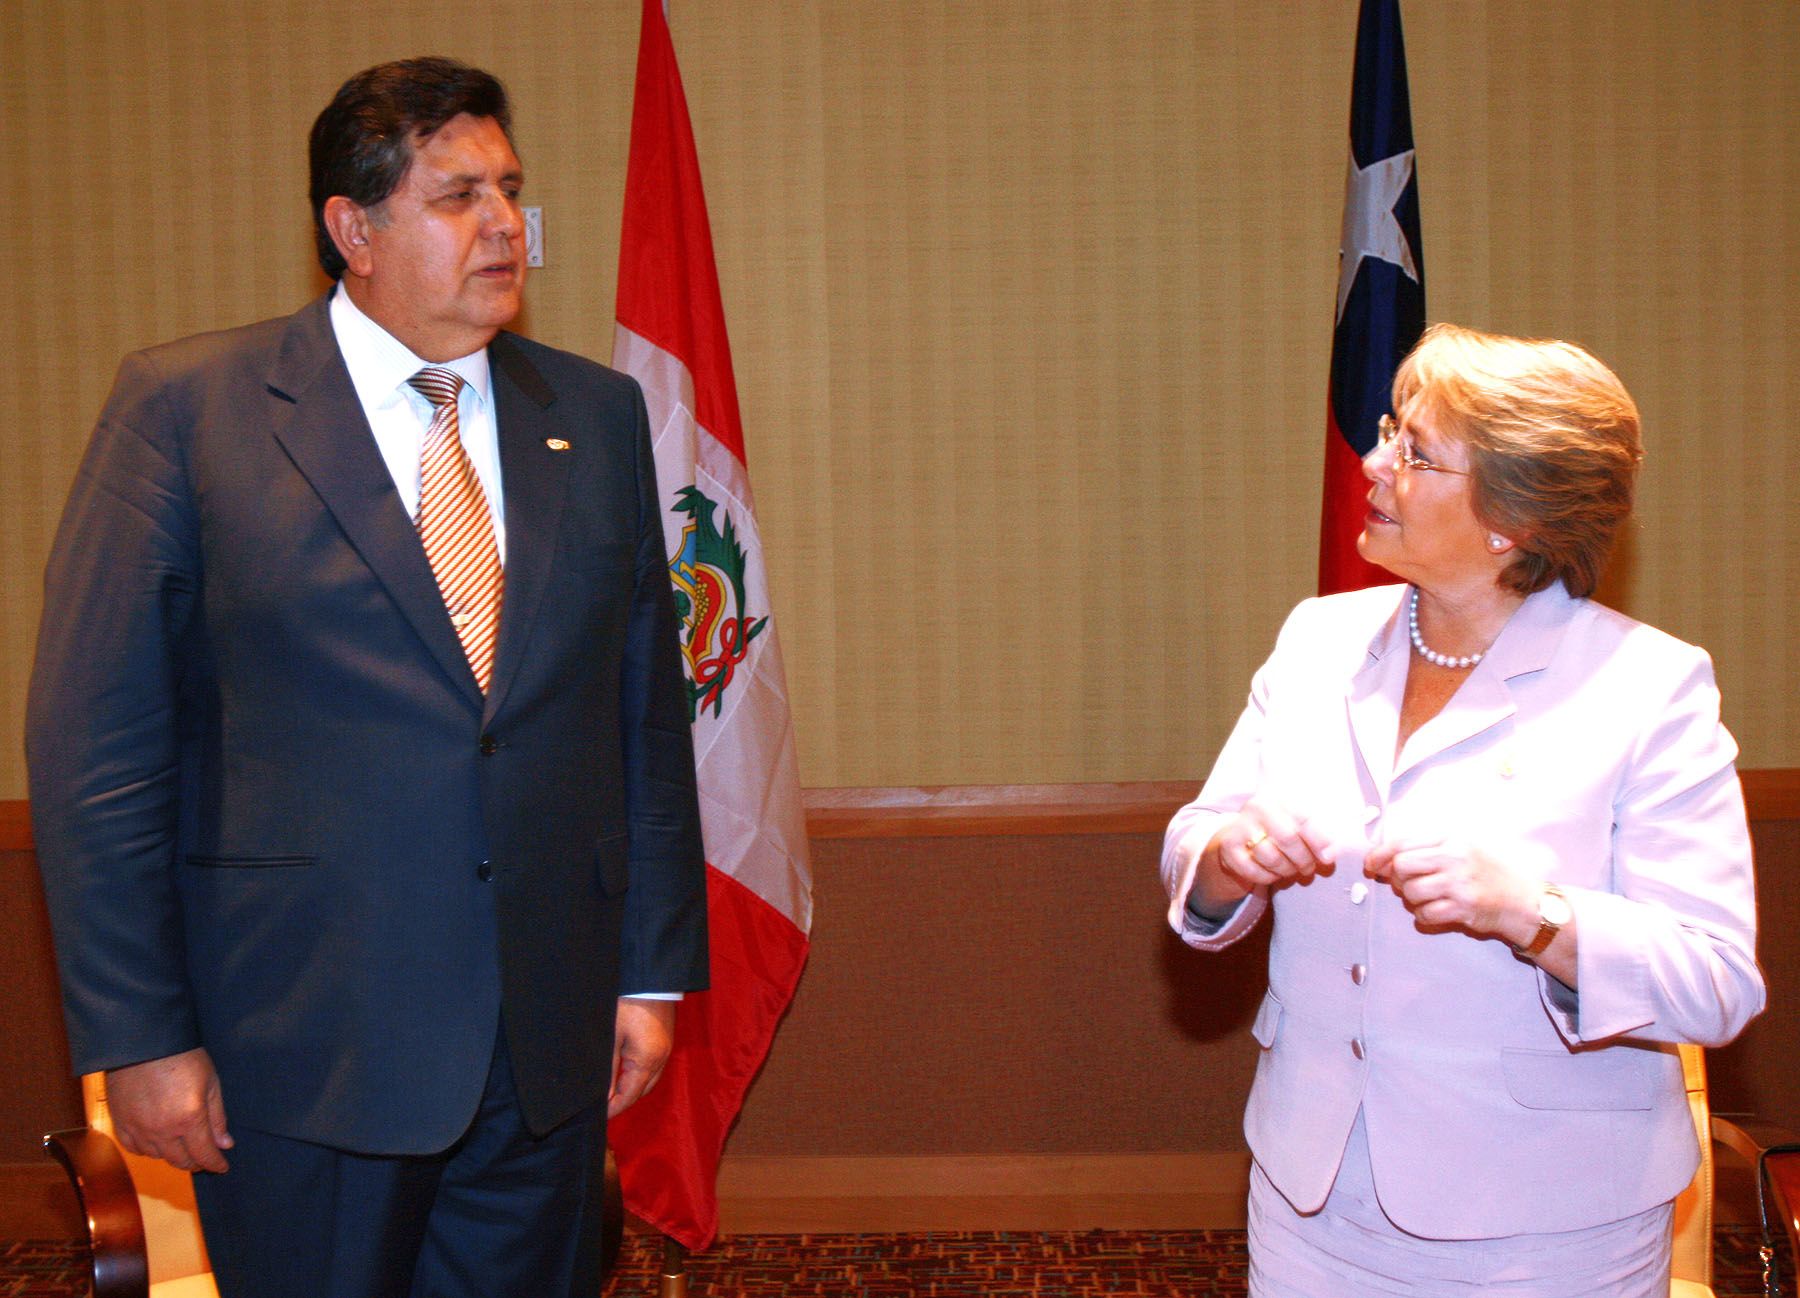 El Presidente de la República Alan García se reúne con la mandataria chilena, Michelle Bachelet, en el marco de la V Cumbre de las Américas.Foto:ANDINA/Carlos Lezama.